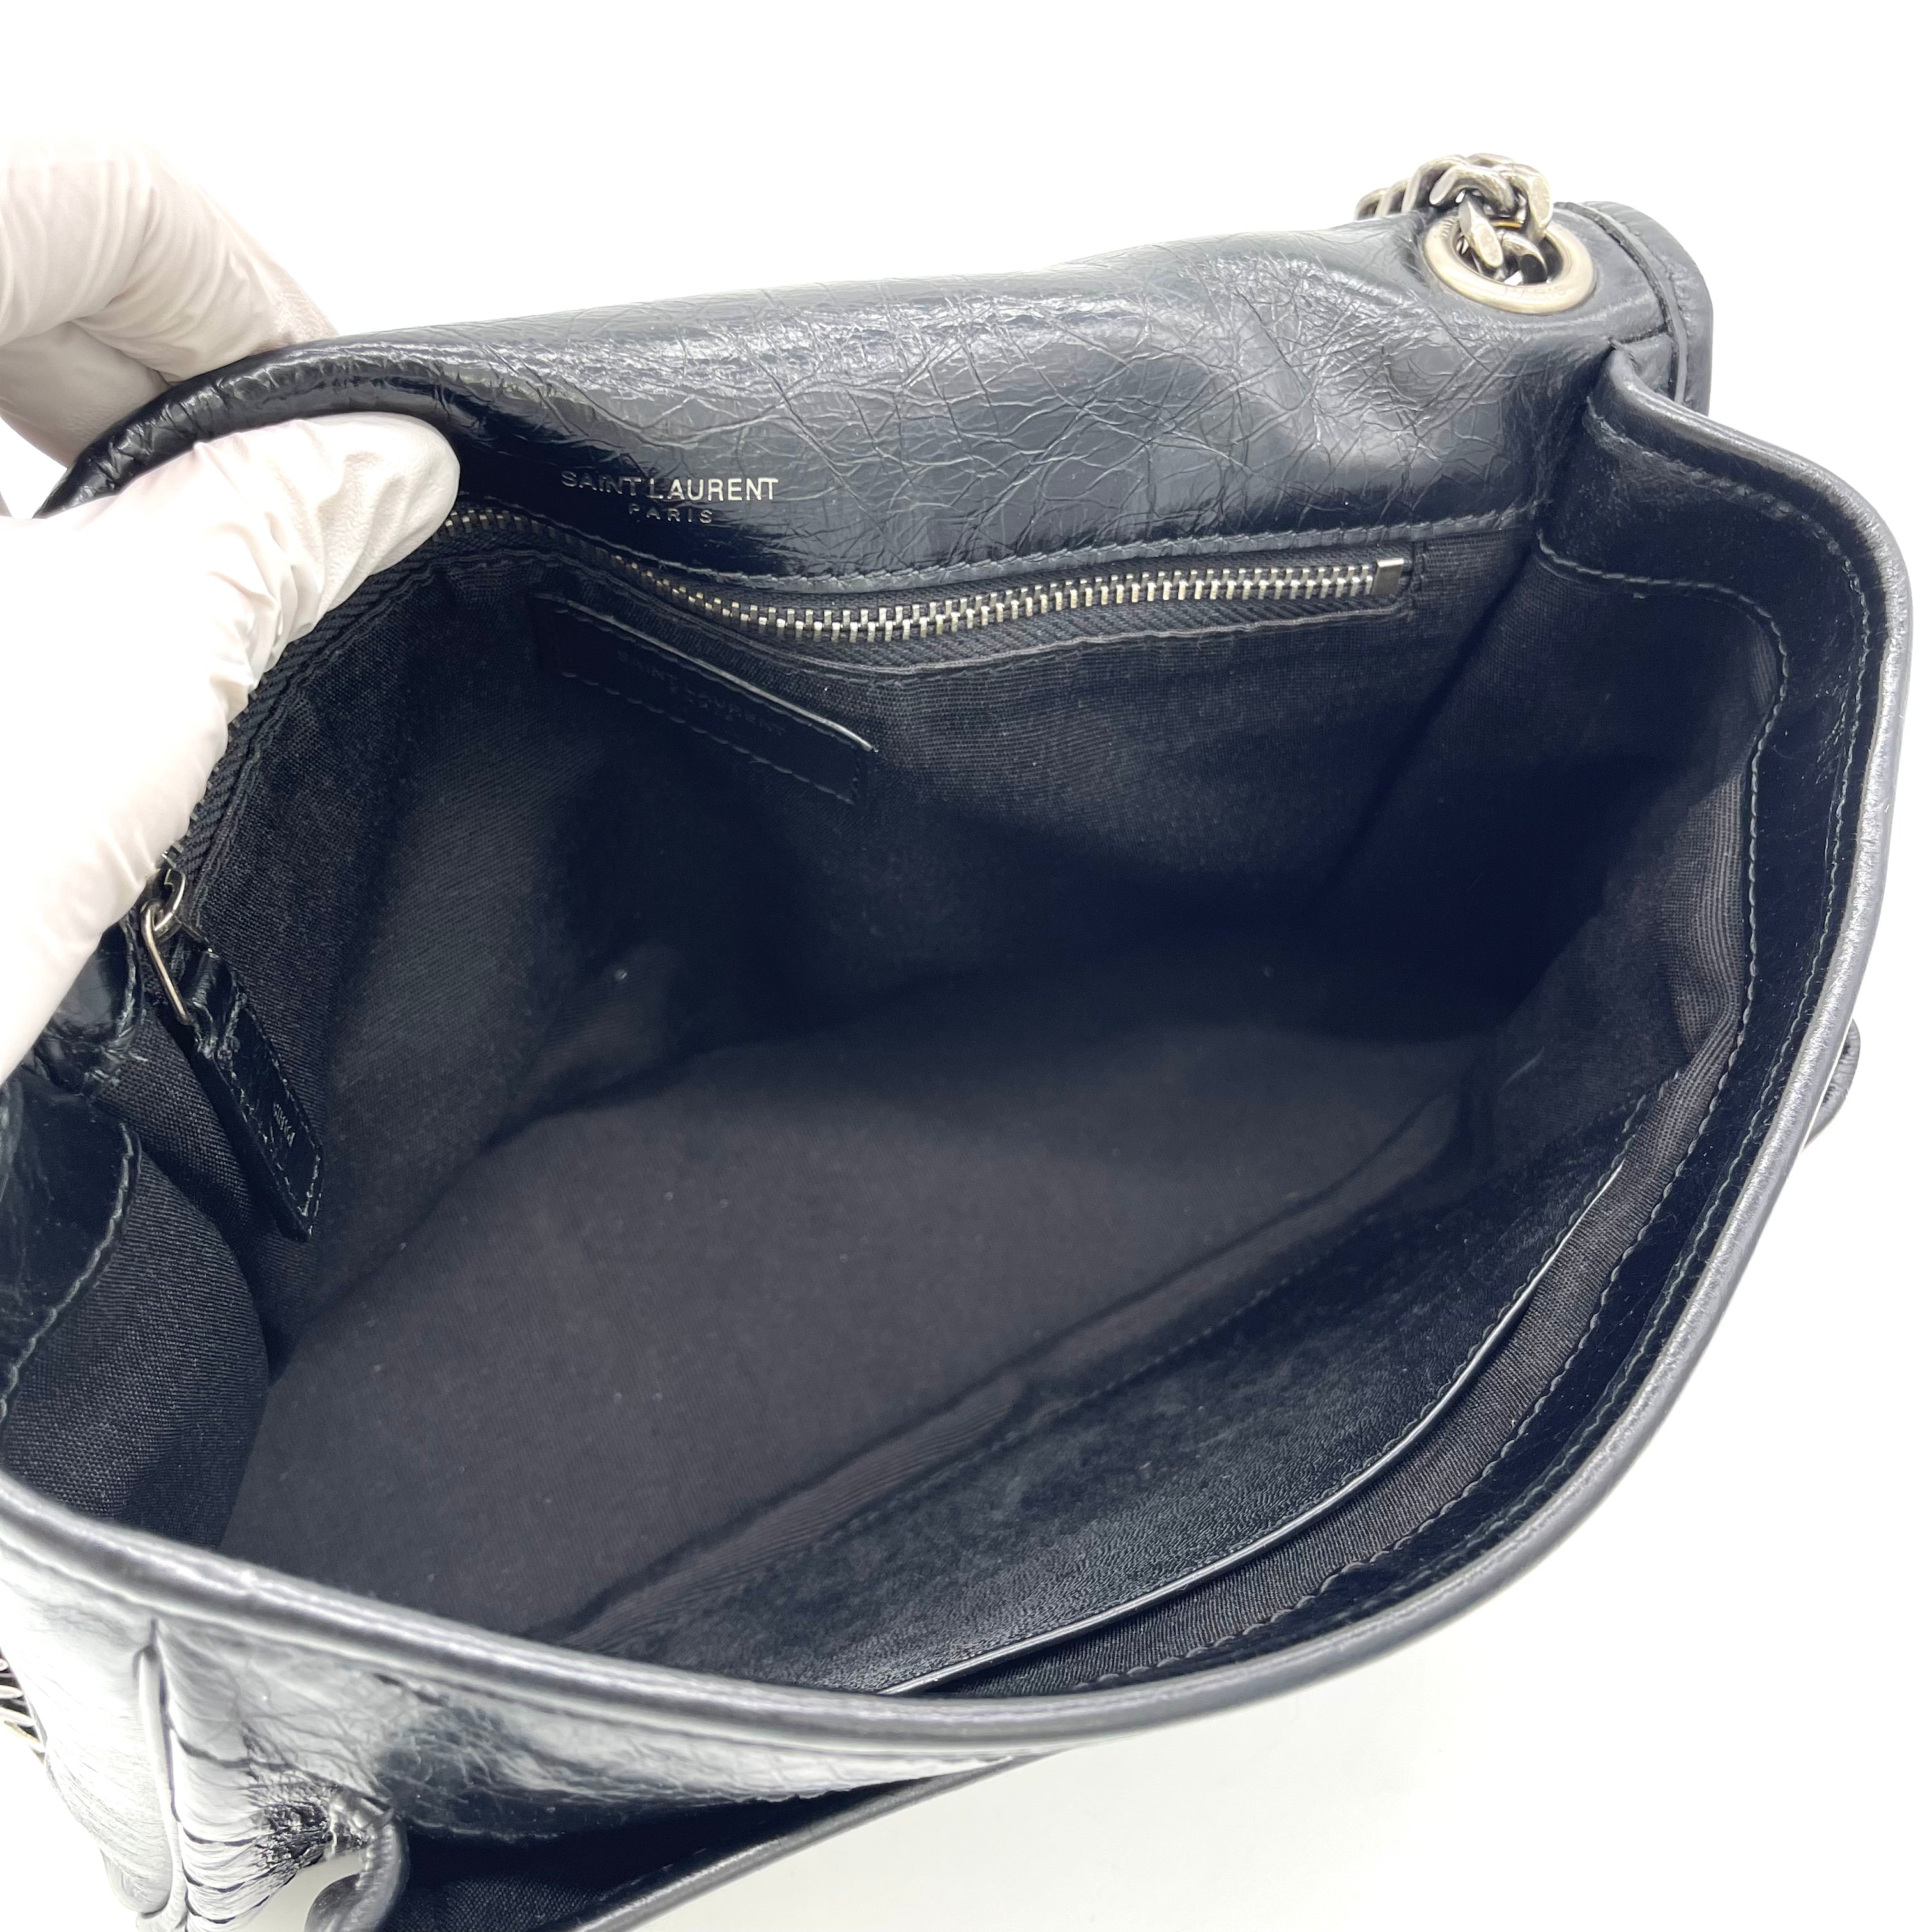 YVES SAINT LAURENT Niki Medium Chain Bag in Crinkled Vintage